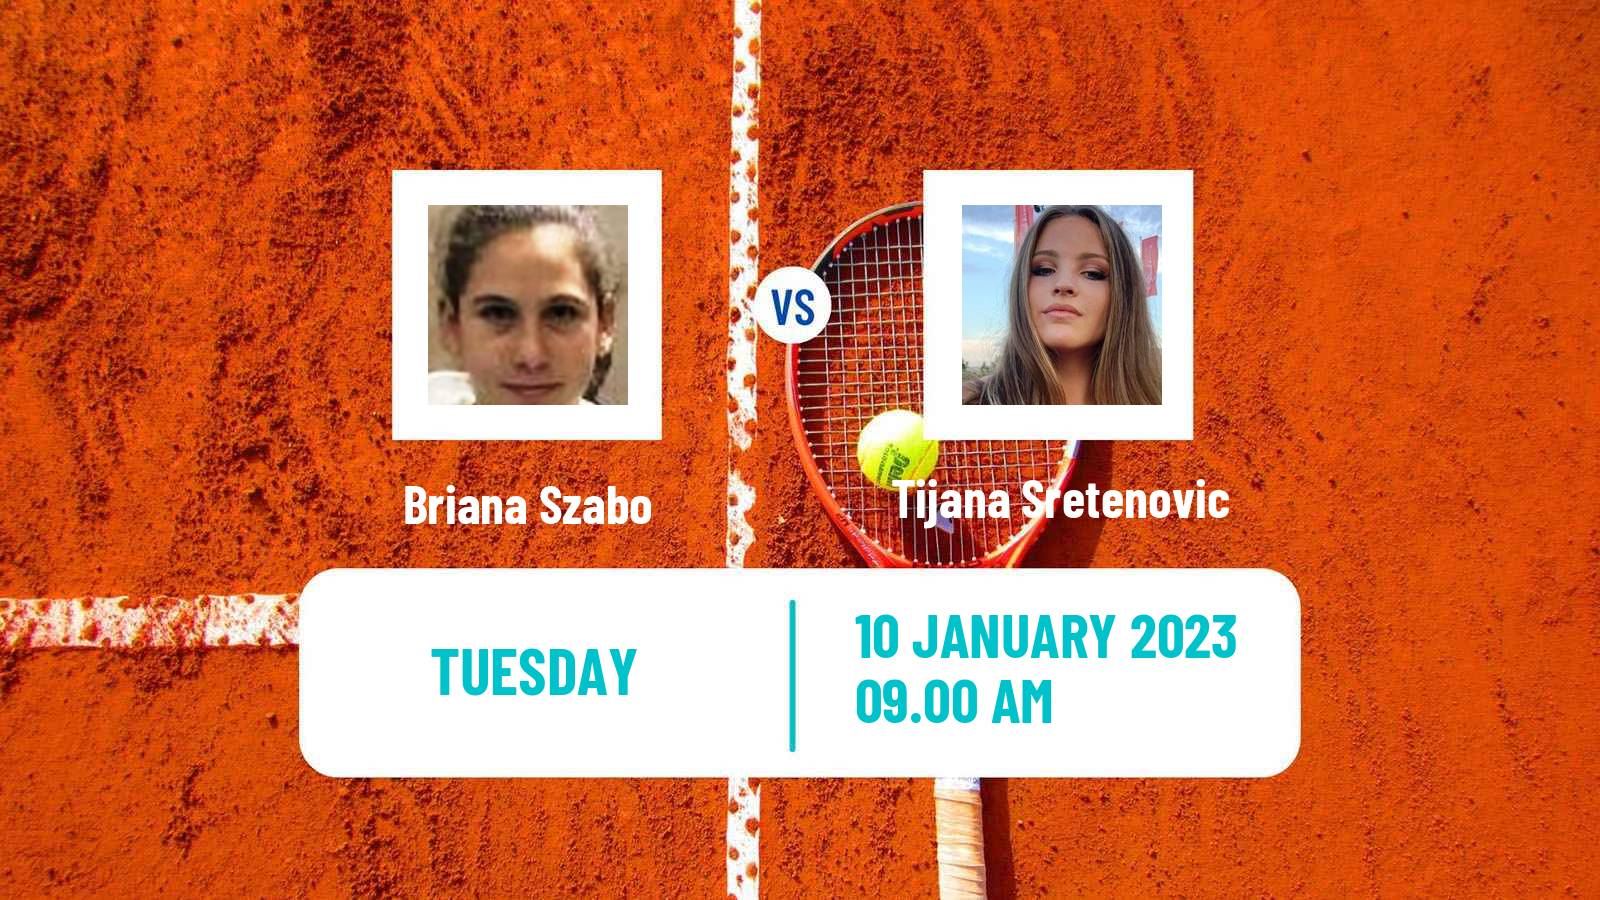 Tennis ITF Tournaments Briana Szabo - Tijana Sretenovic